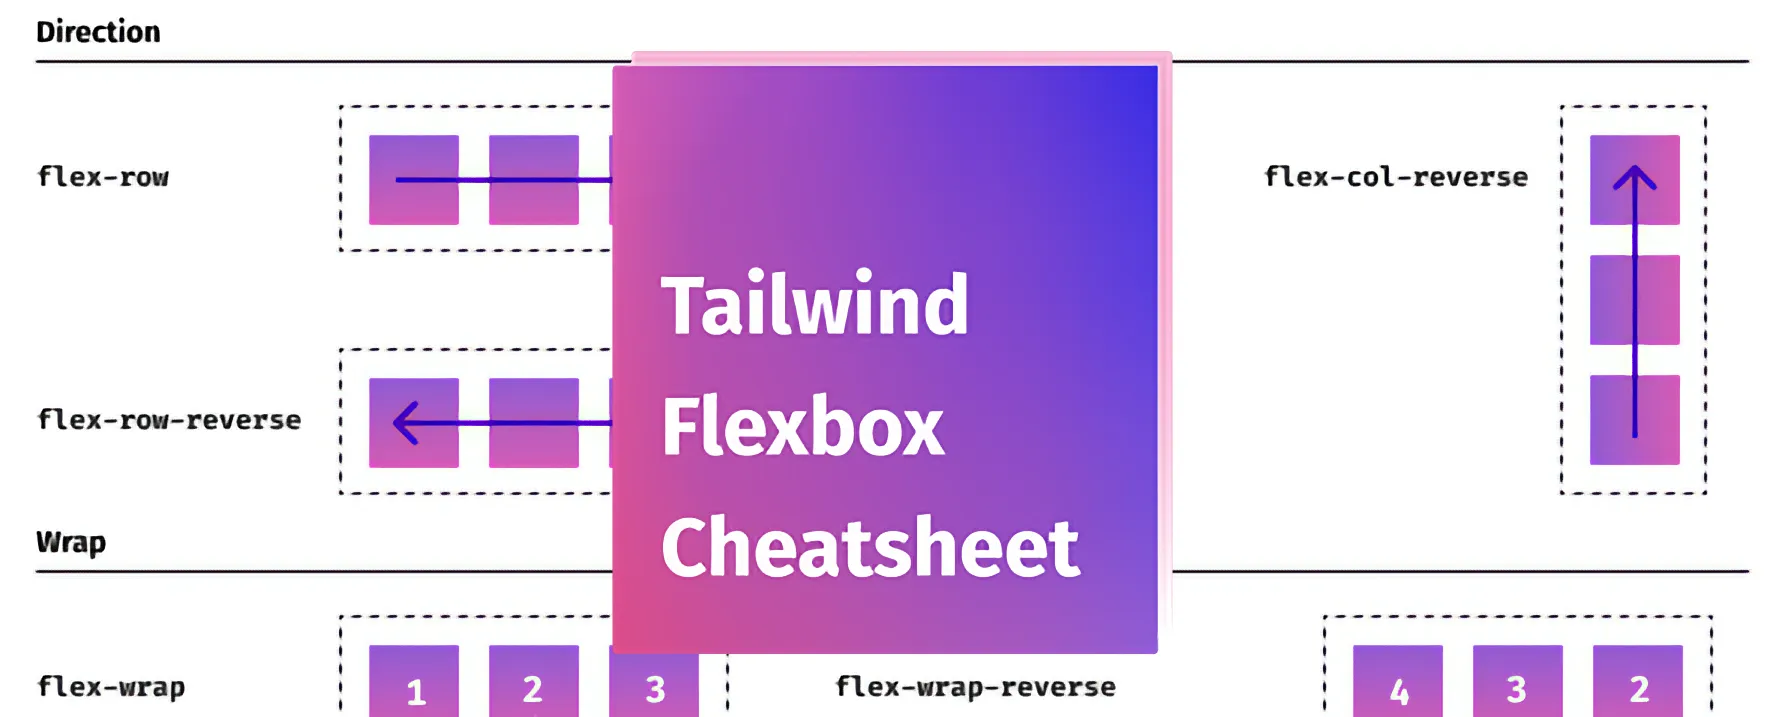 Tailwind Flexbox Cheatsheet